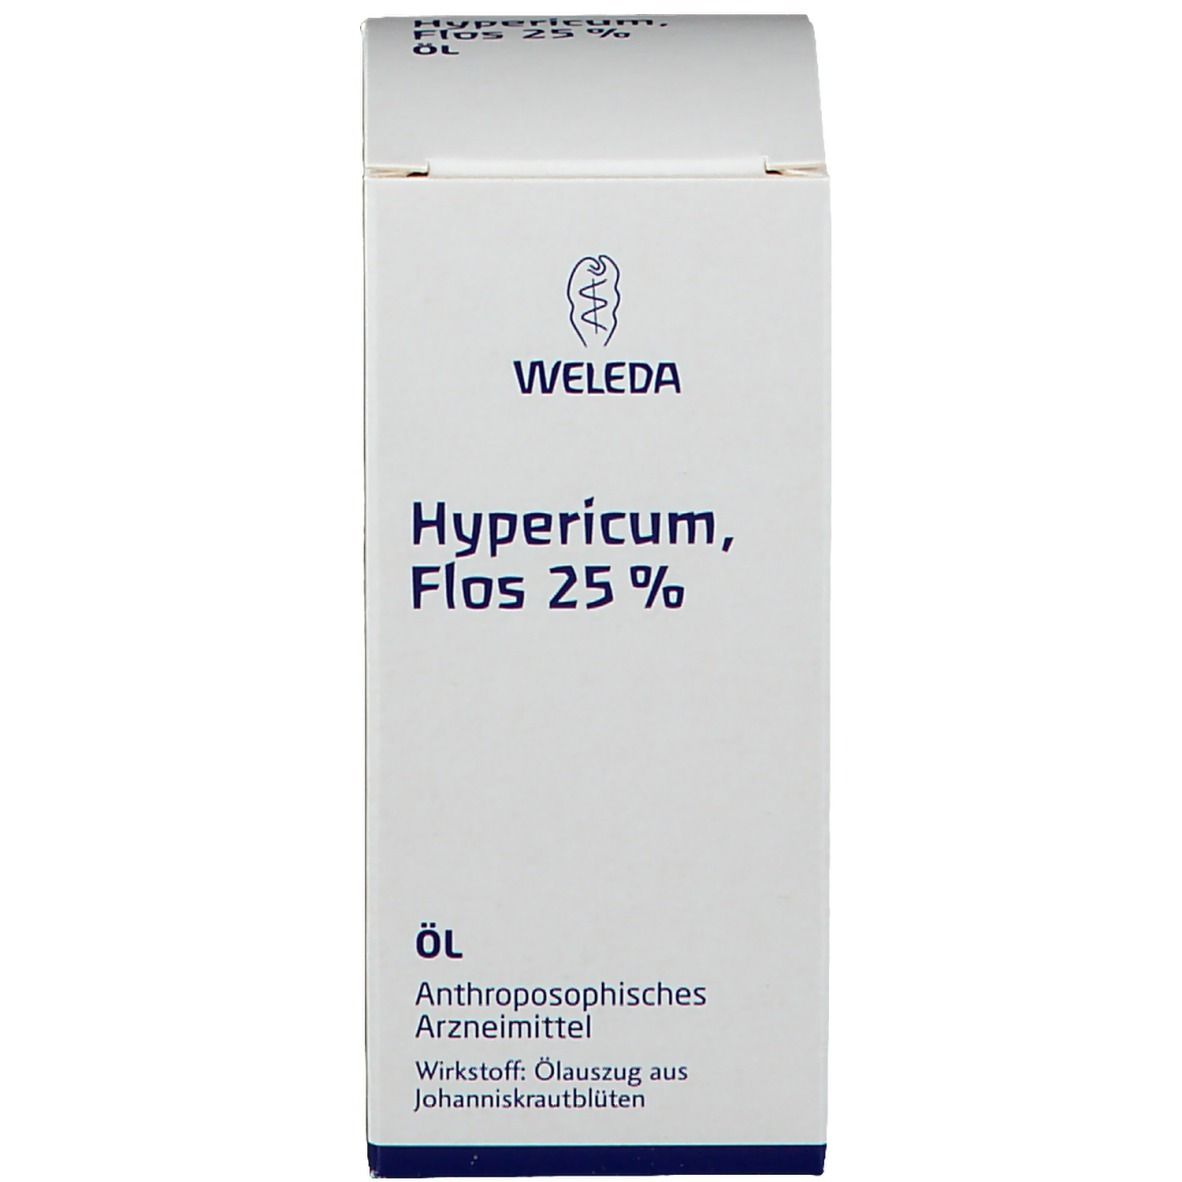 Hypericum Flos 25 %